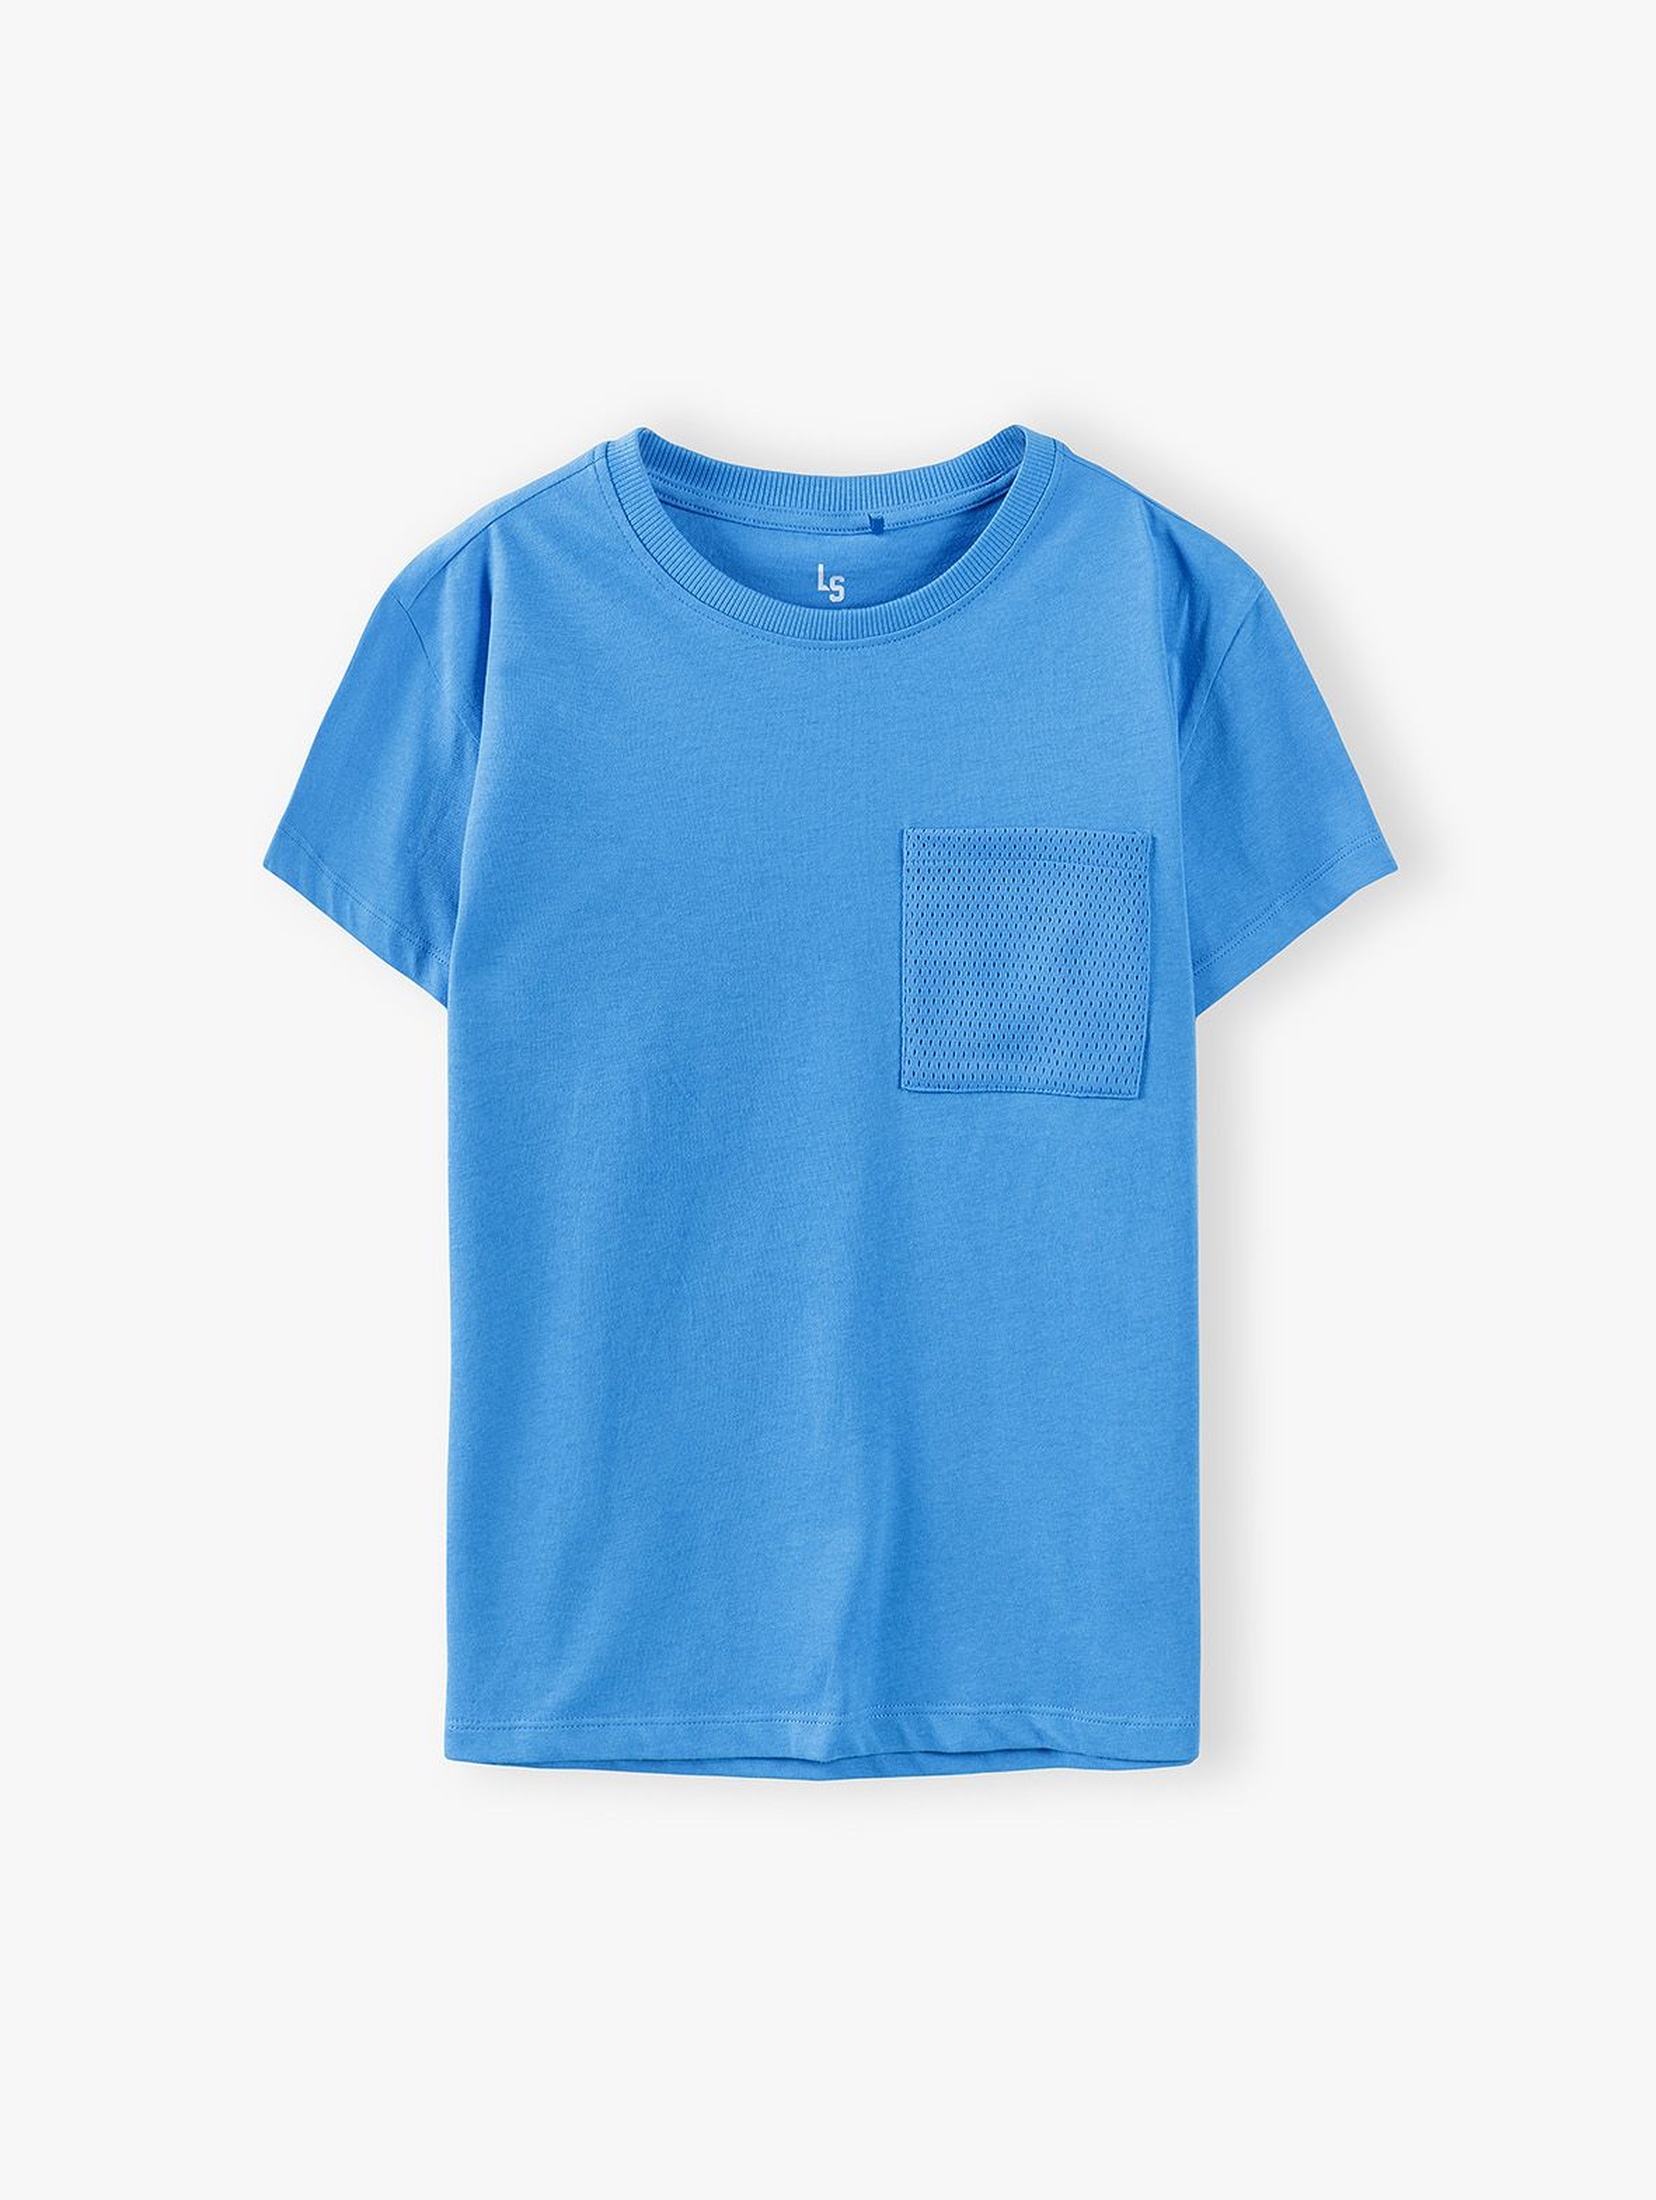 T-shirt chłopięcy w kolorze niebieskim z kieszonką